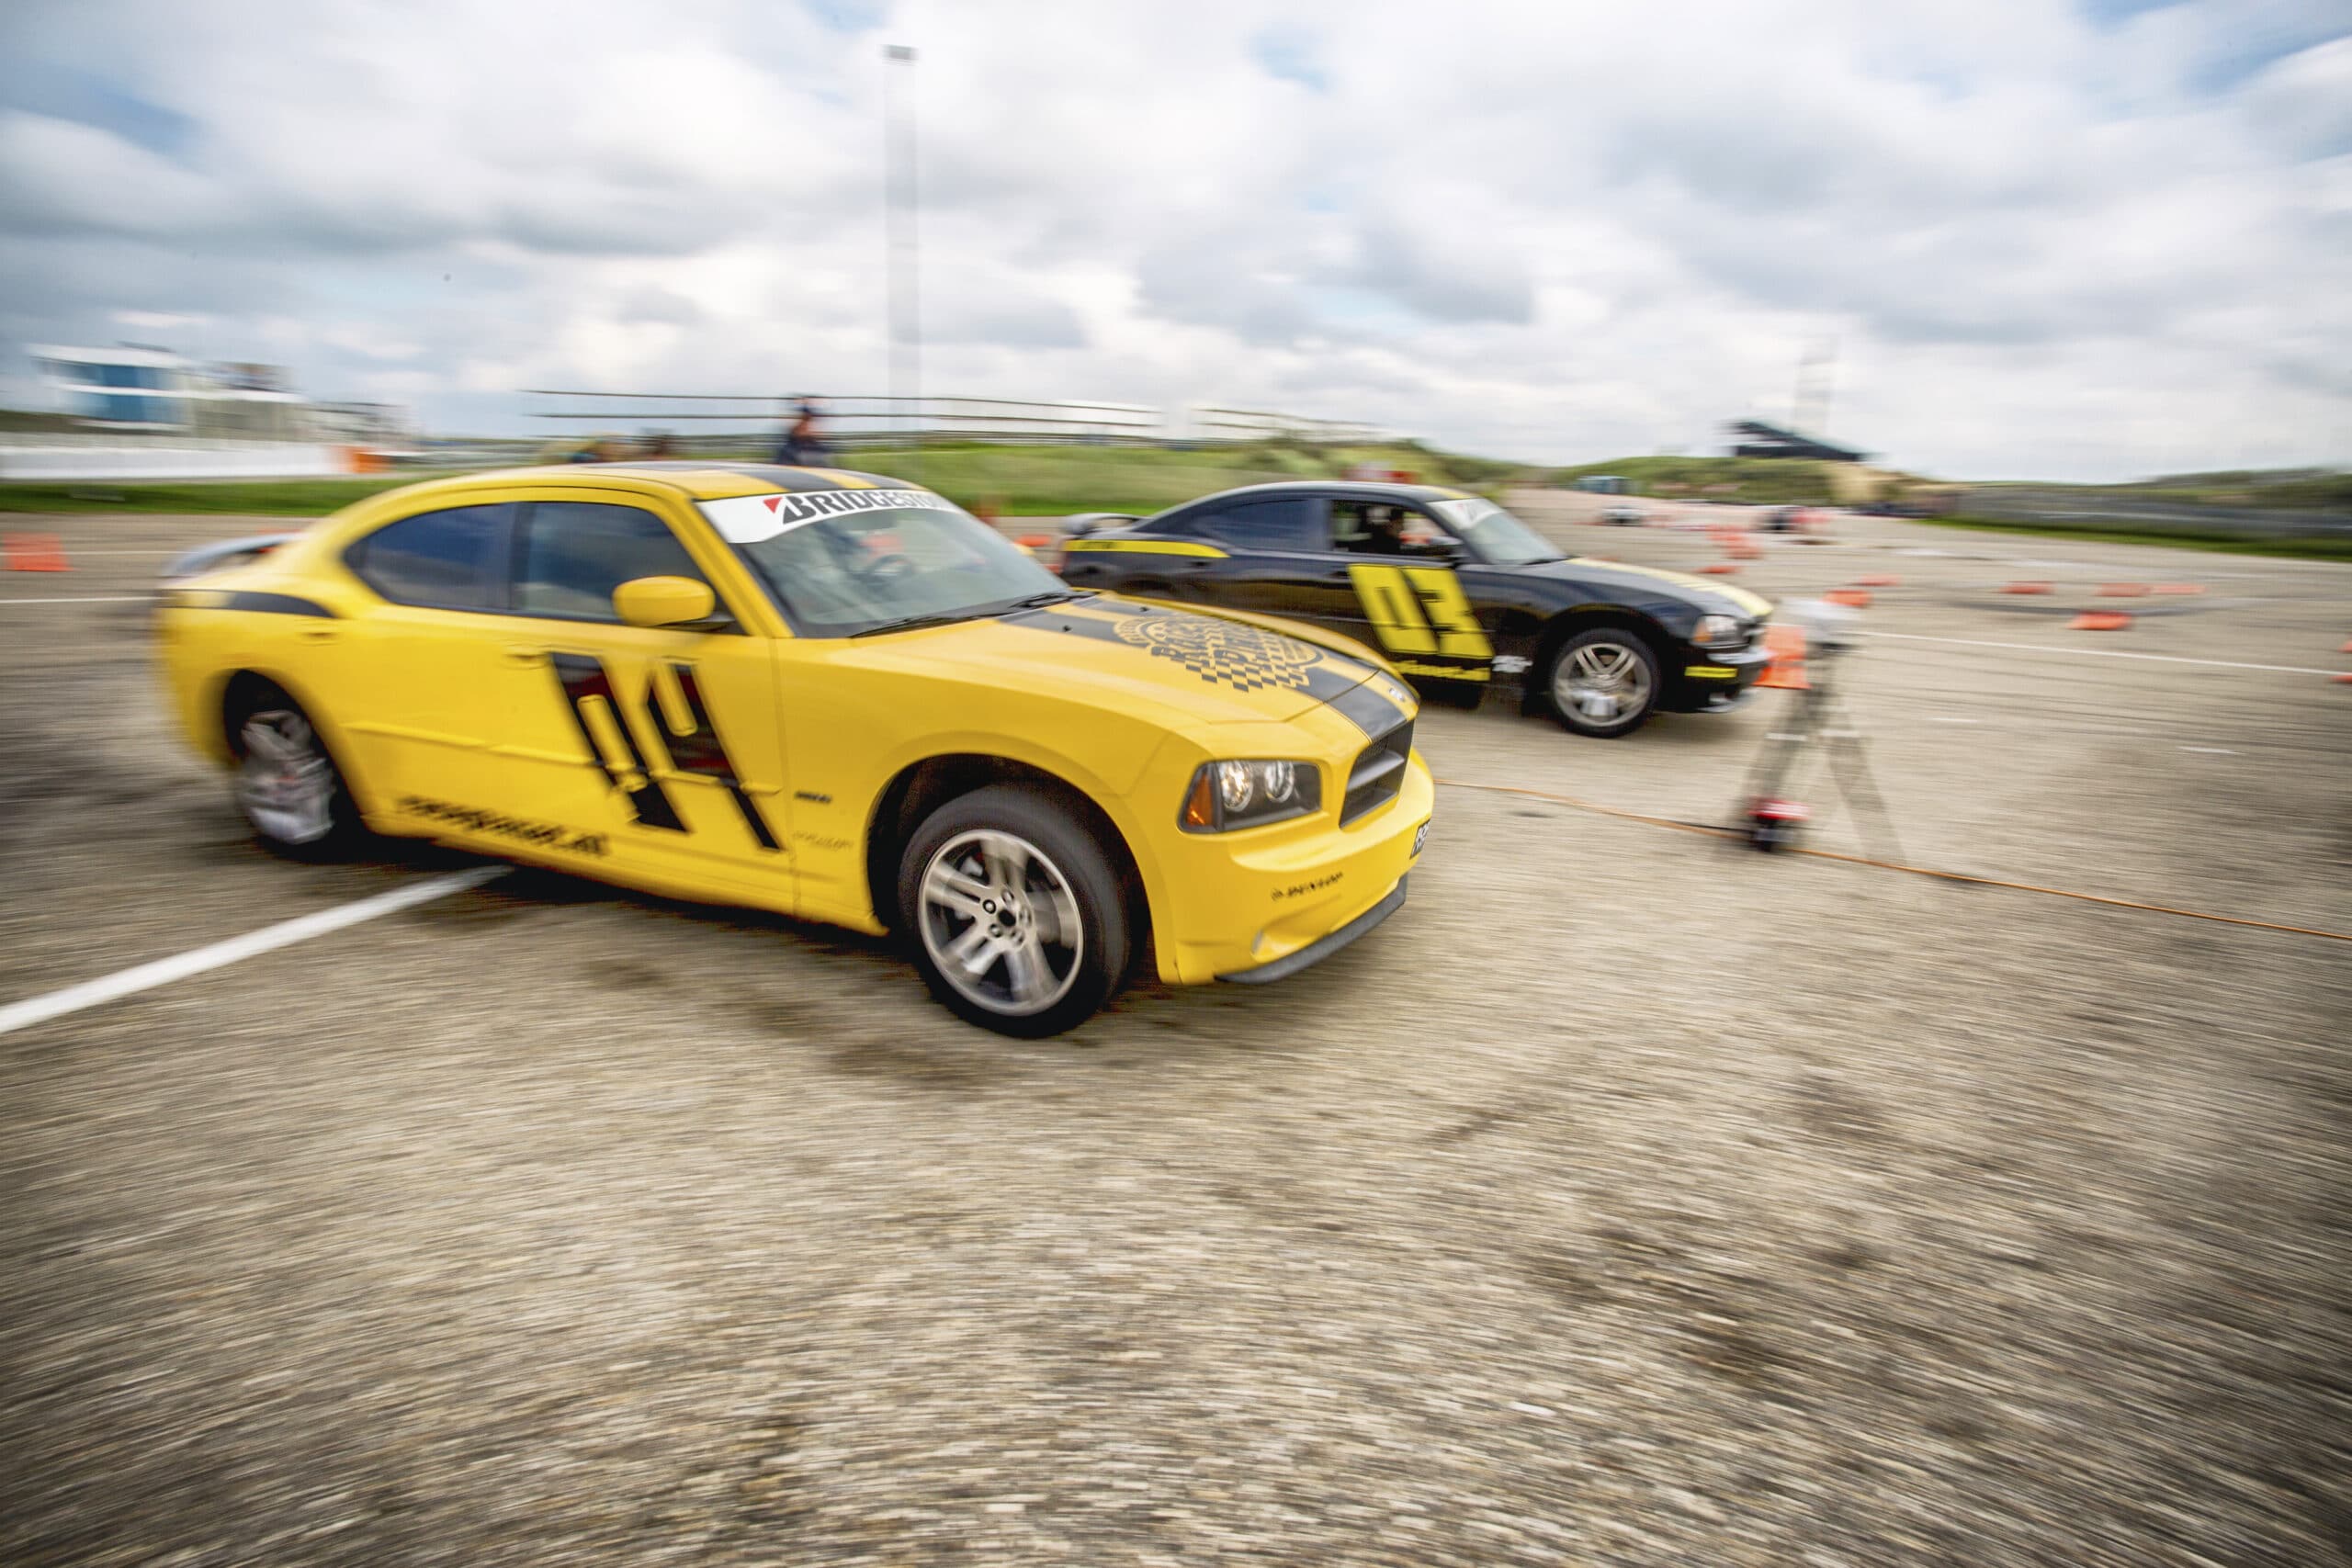 Twee deelnemers in Dodge Chargers strijden tegen elkaar in de dragrace om de overwinning op Circuit Zandvoort tijdens een Race Experience.